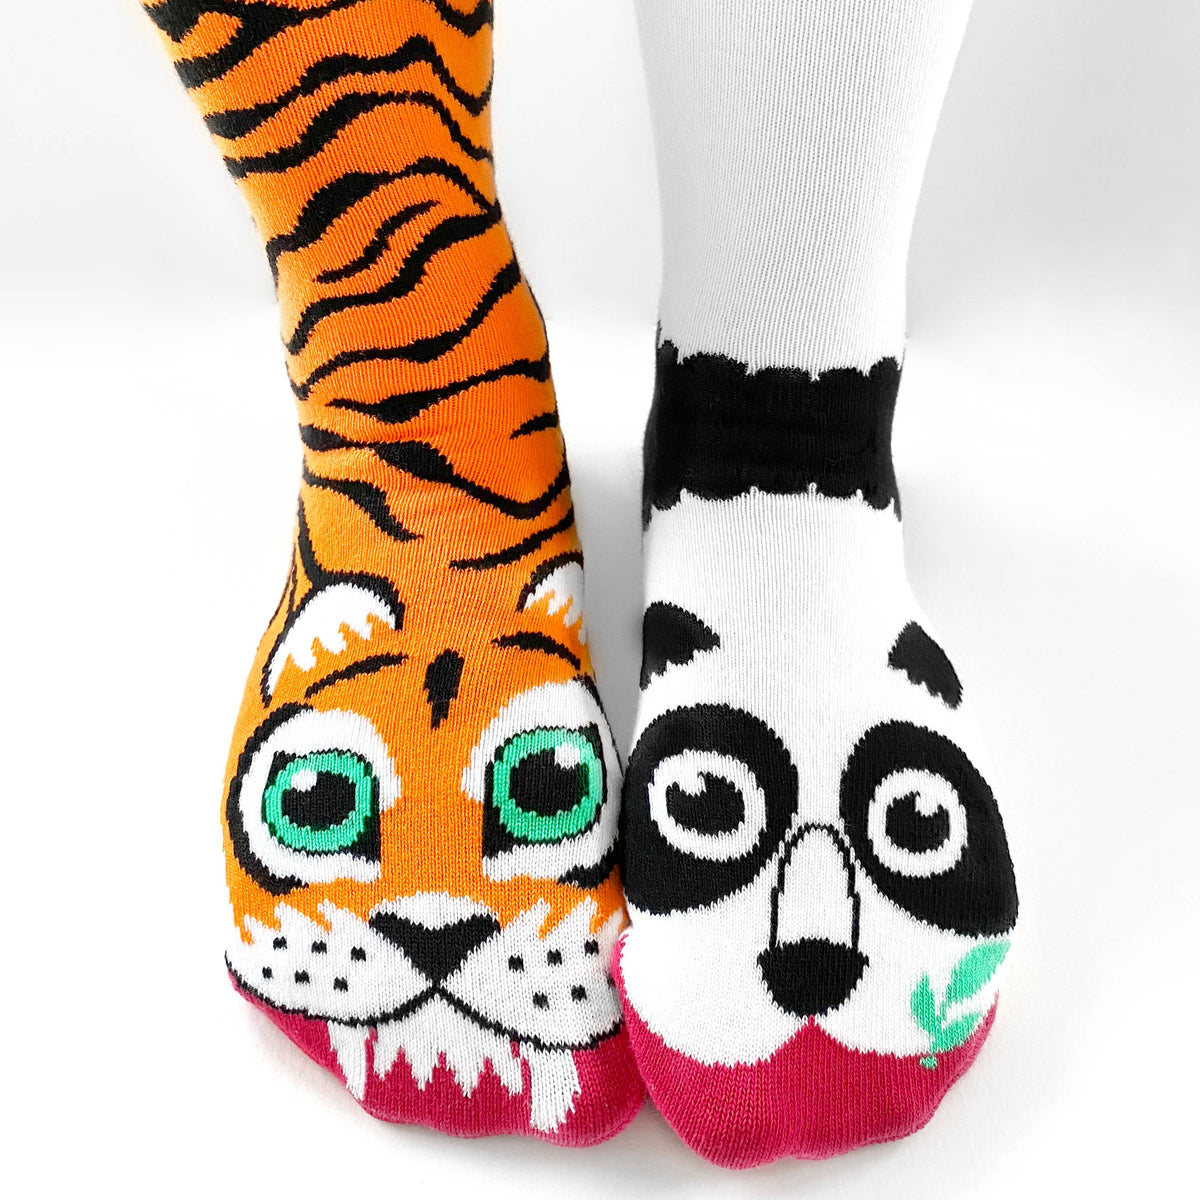 Tiger & Panda | Adult Socks | Mismatched Fun Socks